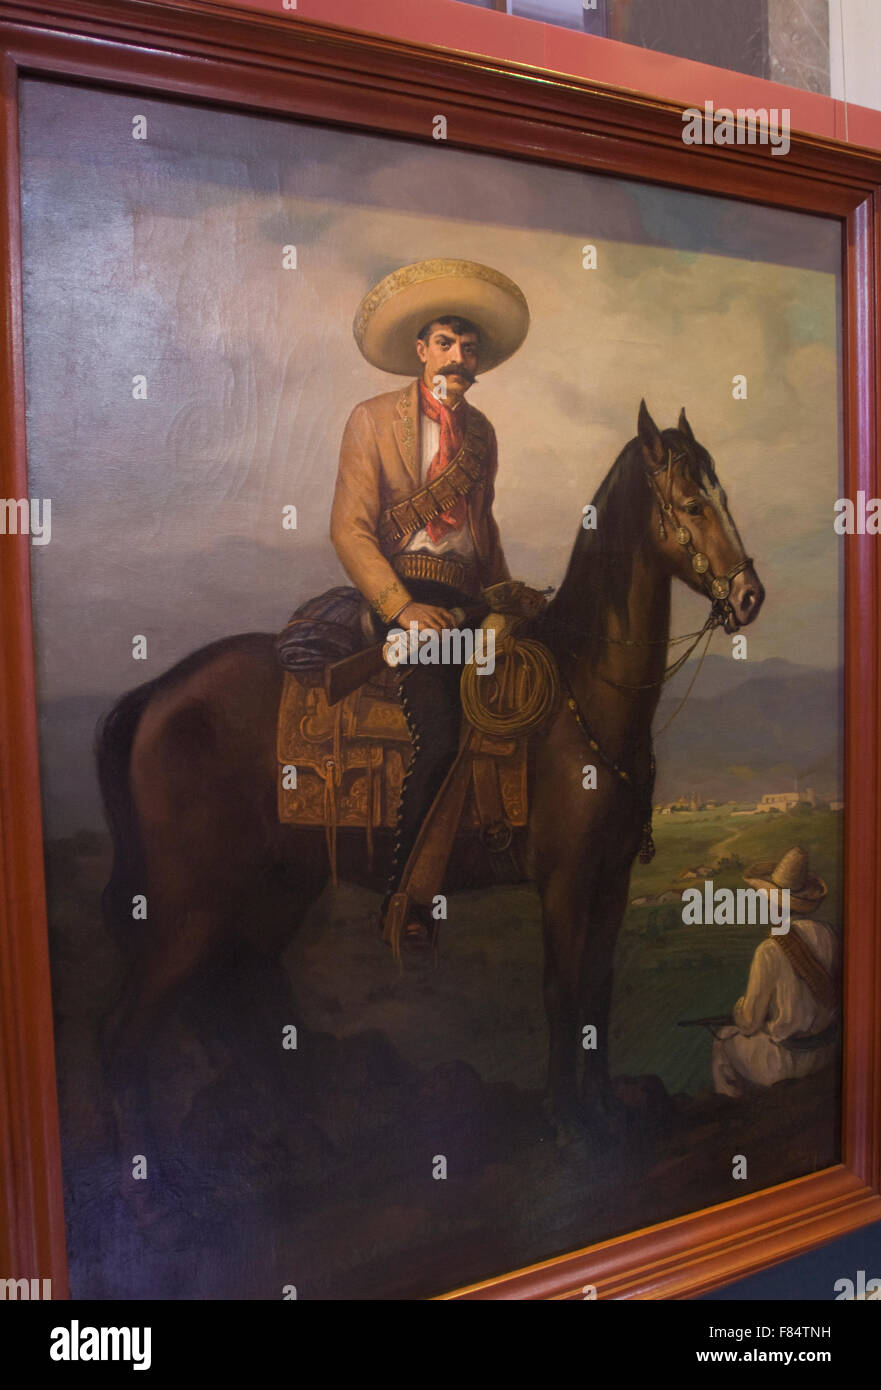 Peinture à l'huile d'Emiliano Zapata dans le Musée National de l'histoire situé dans le château de Chapultepec à Mexico City, Mexico Banque D'Images